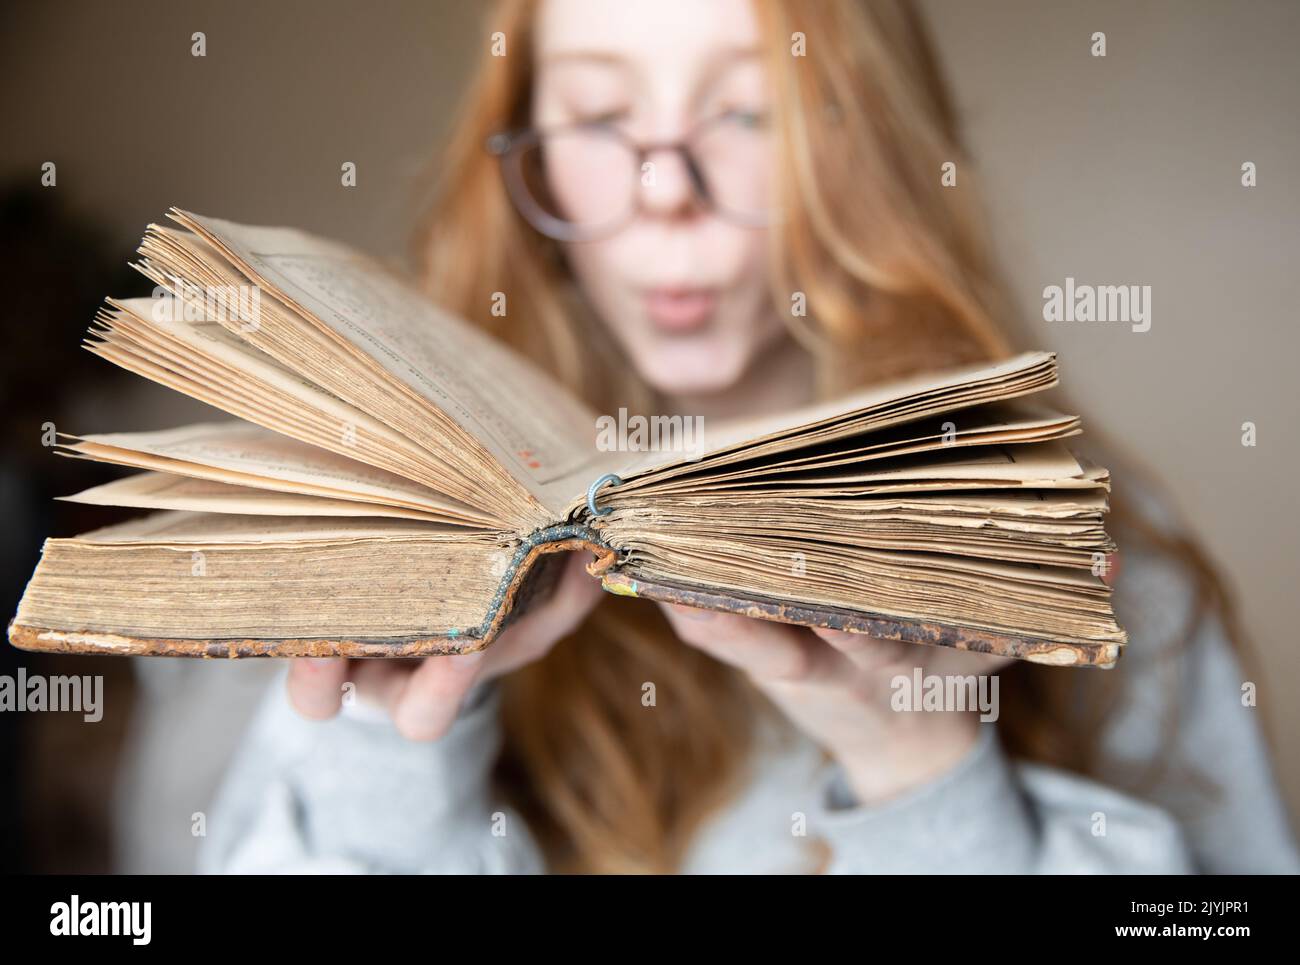 Ein offenes Vintage-Buch in den Händen eines niedlichen Teenagers mit Brille und roten Haaren, in einem halbdunklen Raum, der vom Licht des Fensters beleuchtet wird Stockfoto